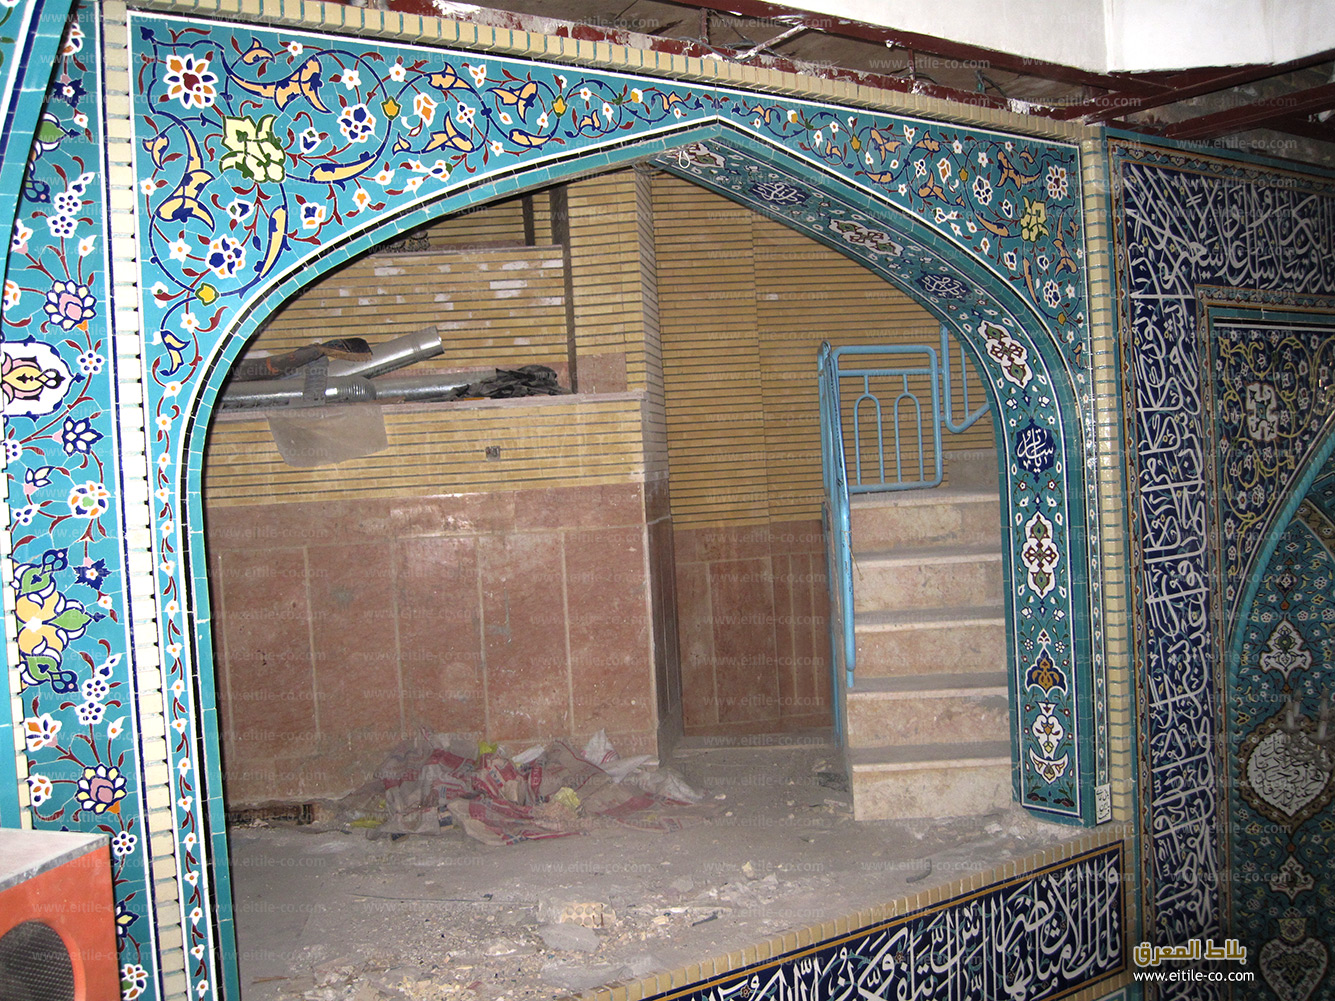 Mosque mosaic tile manufacturer, www.eitile-co.com